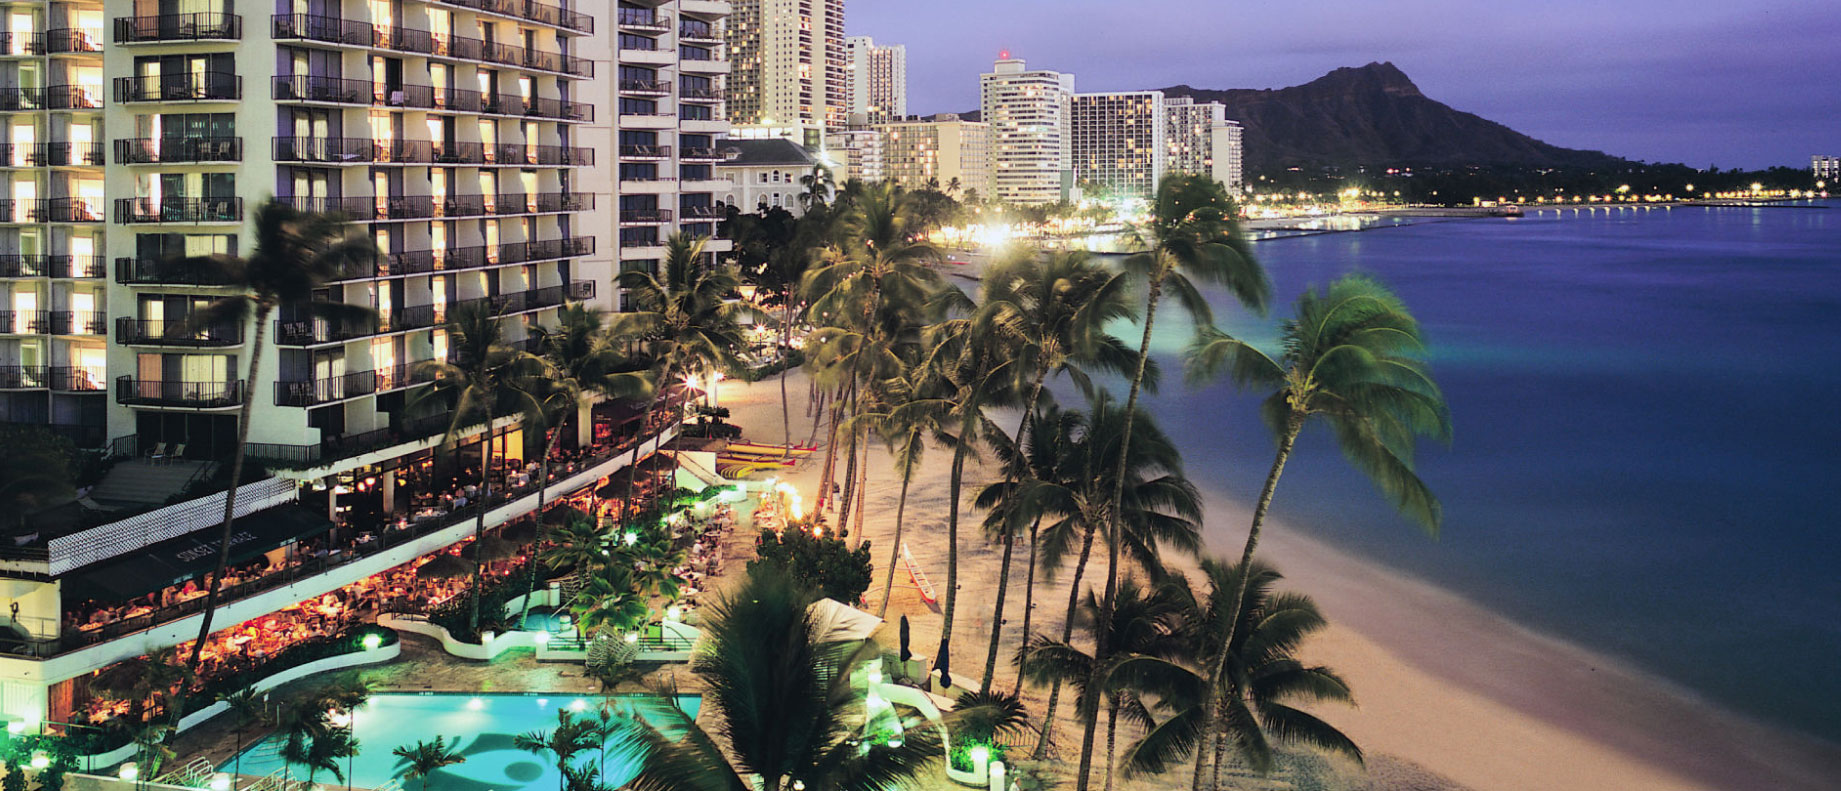 Waikiki Beach with Hotels